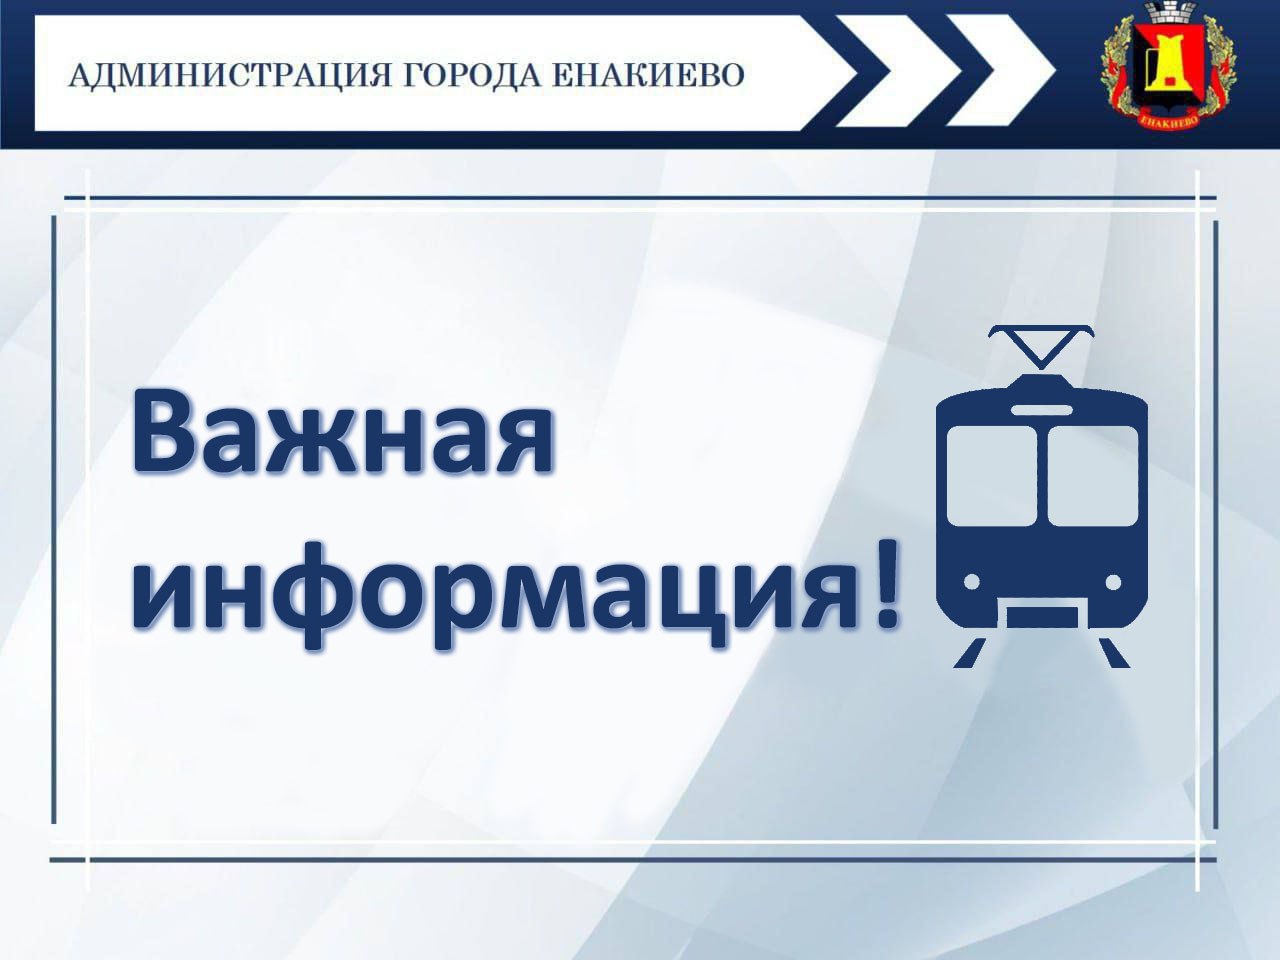 Движение трамвая по маршруту № 3 возобновлено!.